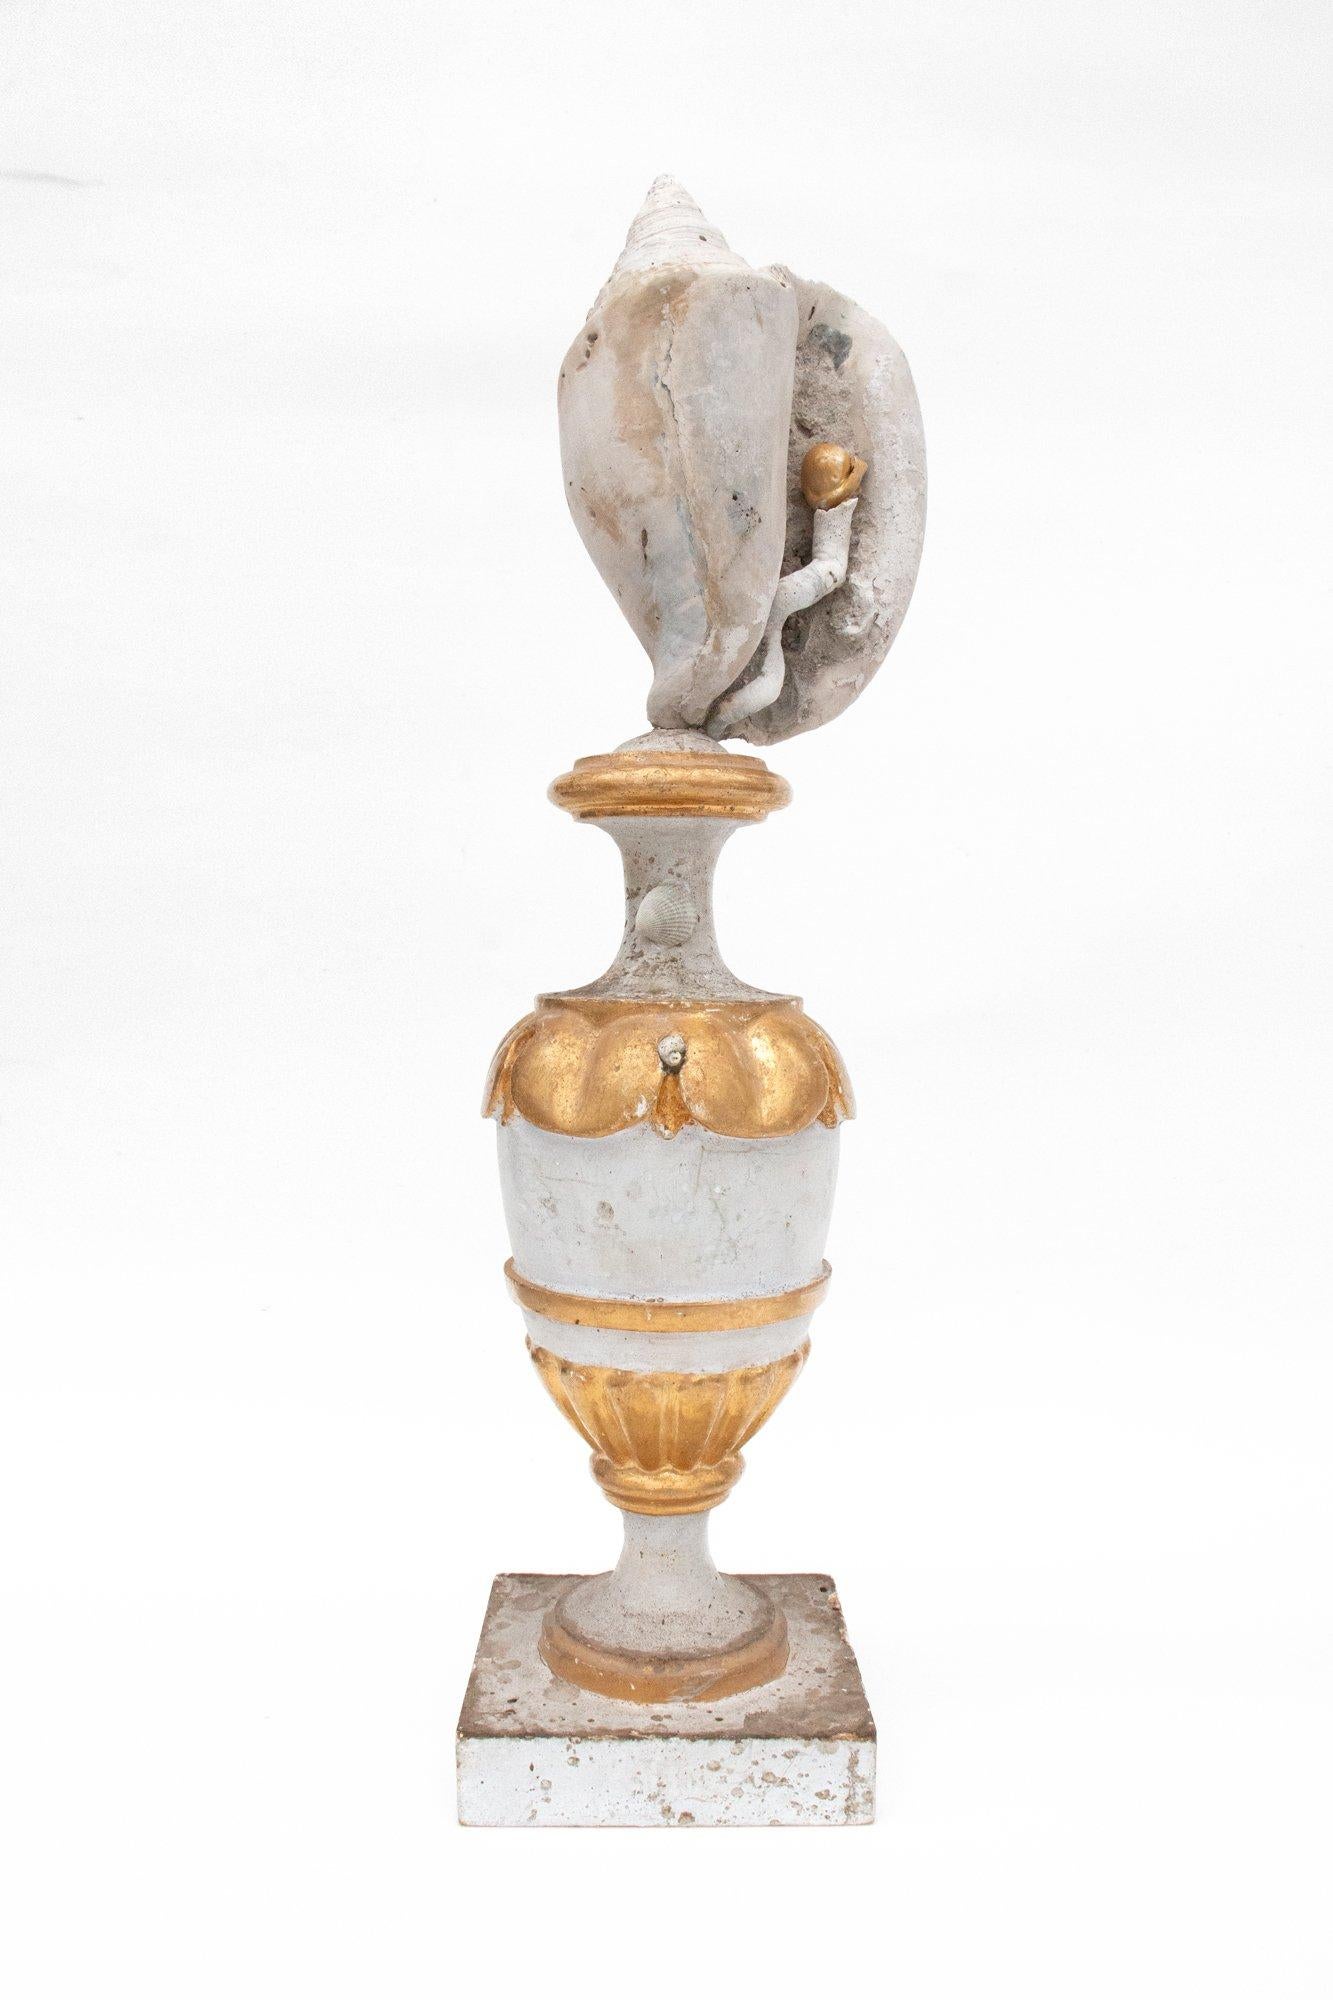 Paire de vases d'autel d'église italiens du XVIIIe siècle en feuilles d'or, décorés de coquillages fossiles, de siliquaires et de perles baroques naturelles. Les vases provenaient à l'origine d'une église d'Arezzo, en Italie. Ils sont sculptés et